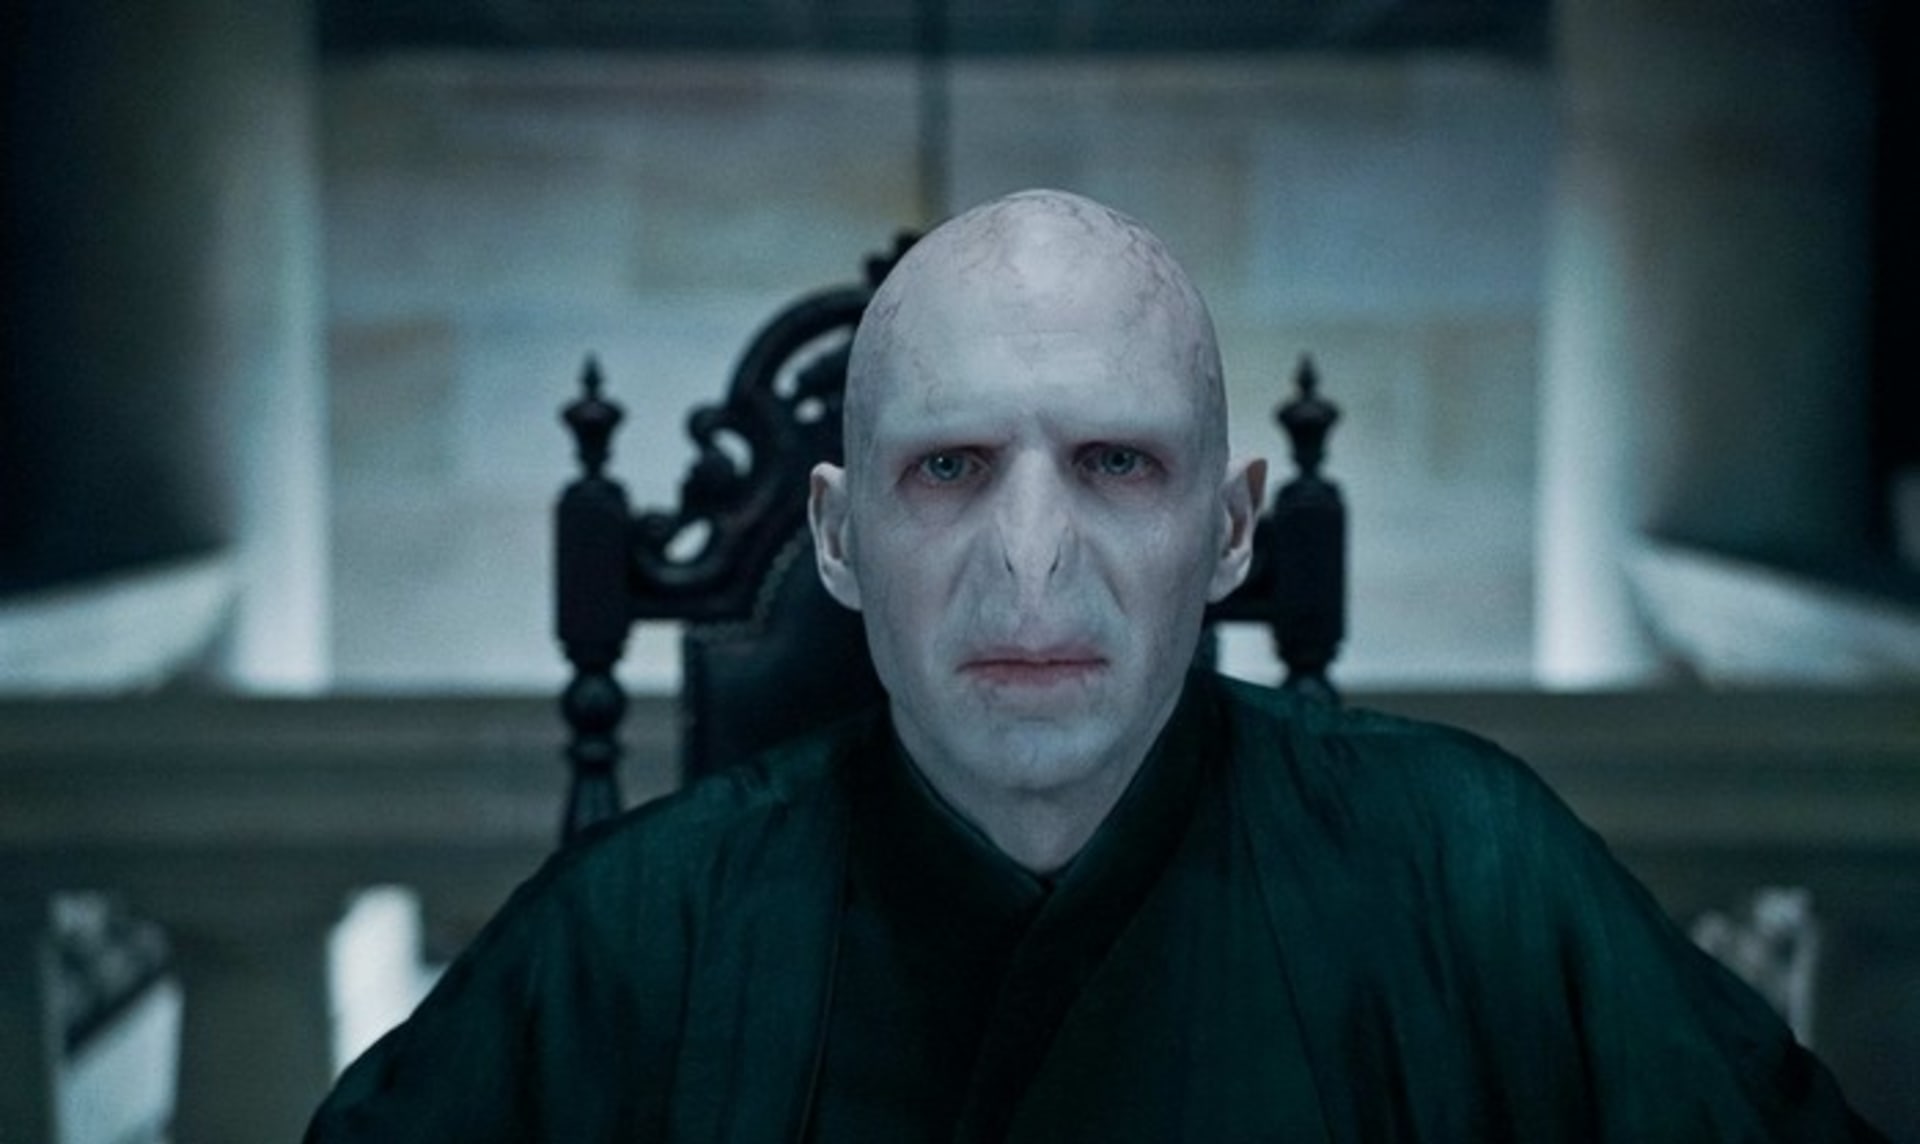 V roli Voldemorta se za roky natáčení vystřídalo 6 herců